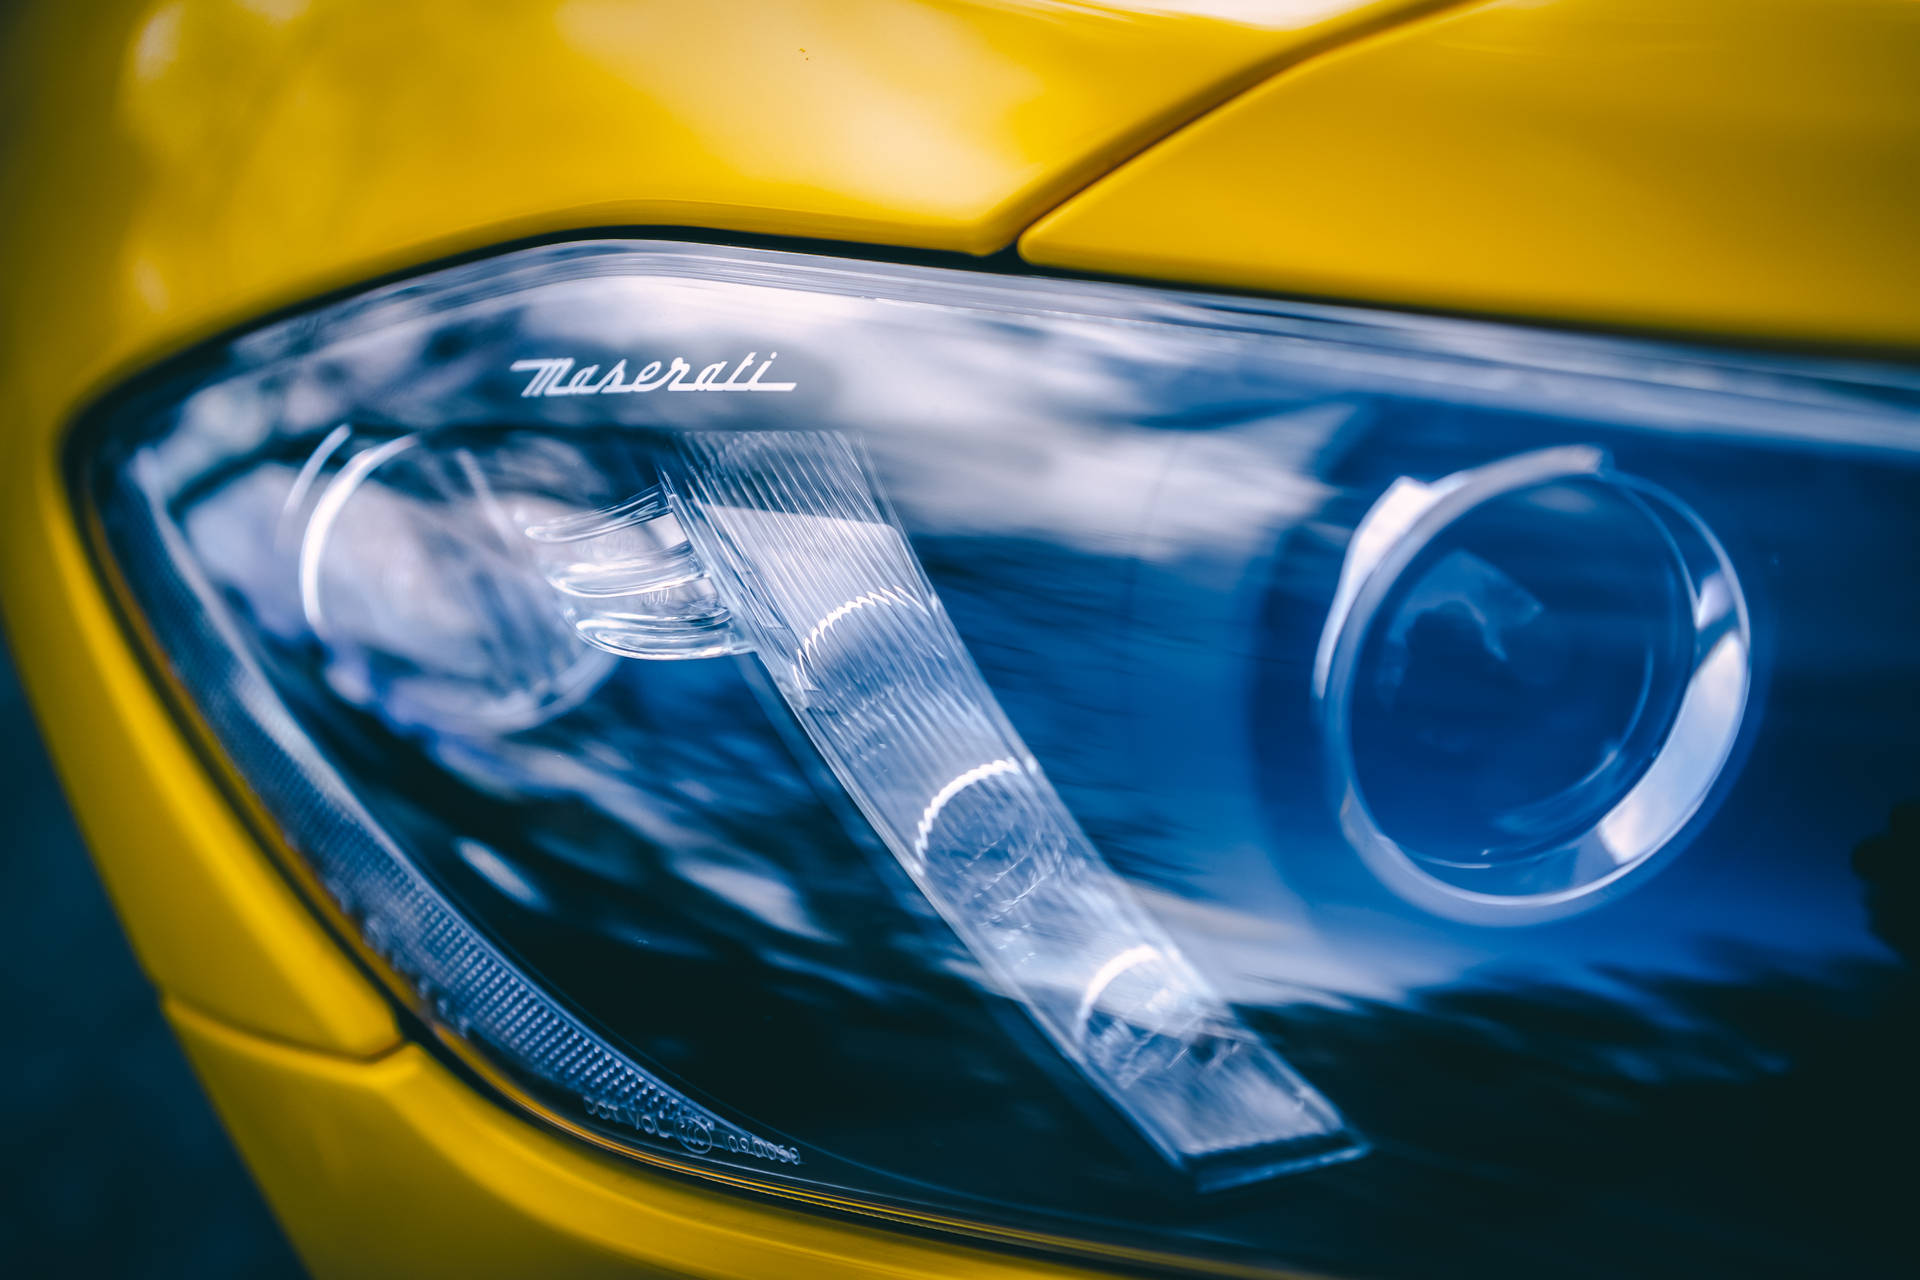 Shiny Maserati Headlight